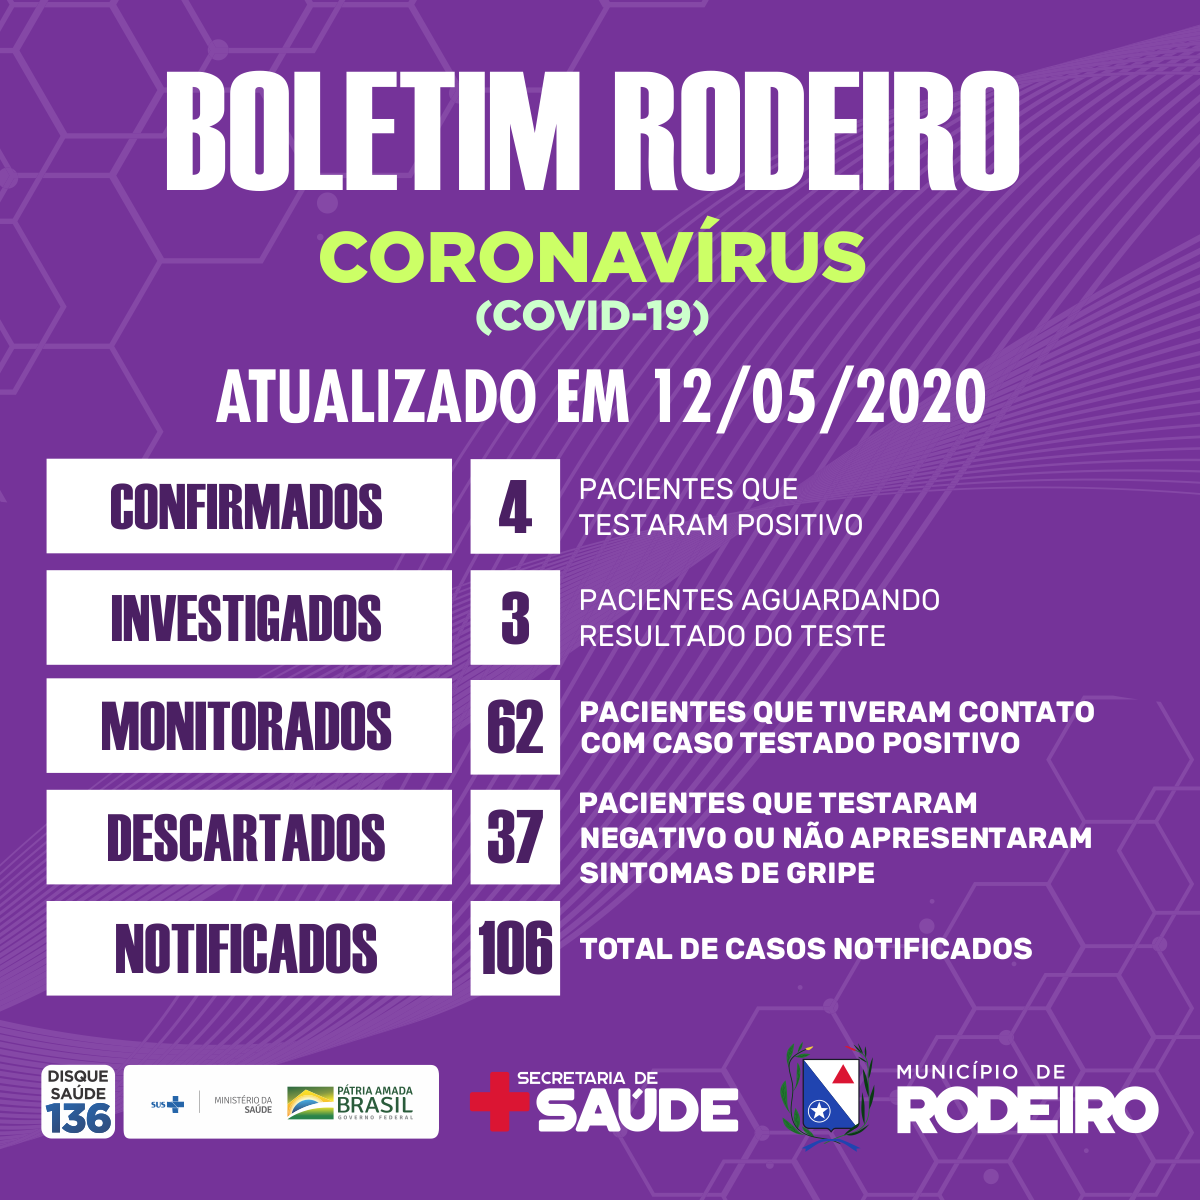 Boletim epidemiológico do Município de Rodeiro, atualização sobre coronavírus em 12/05/2020